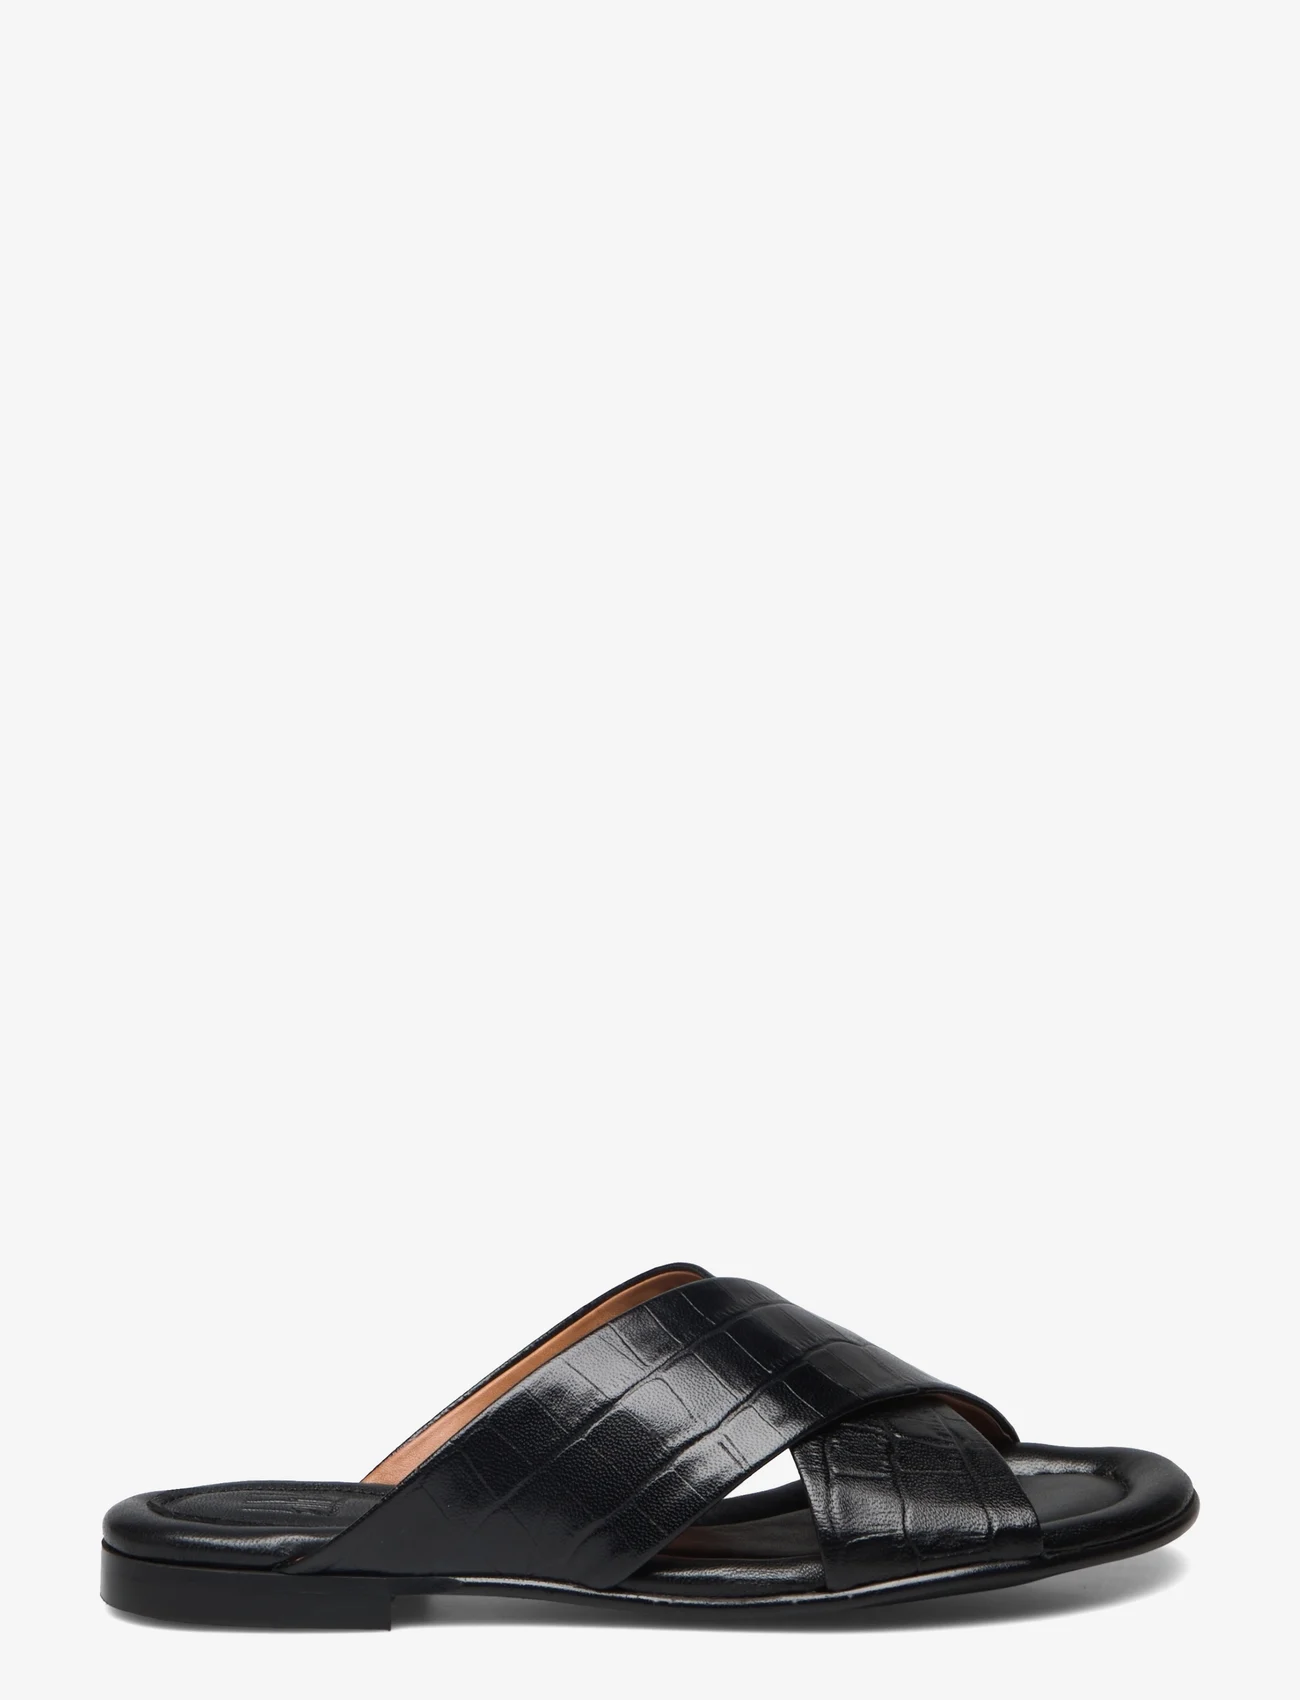 Billi Bi - Sandals - kontsata sandaalid - black croco 20 - 1